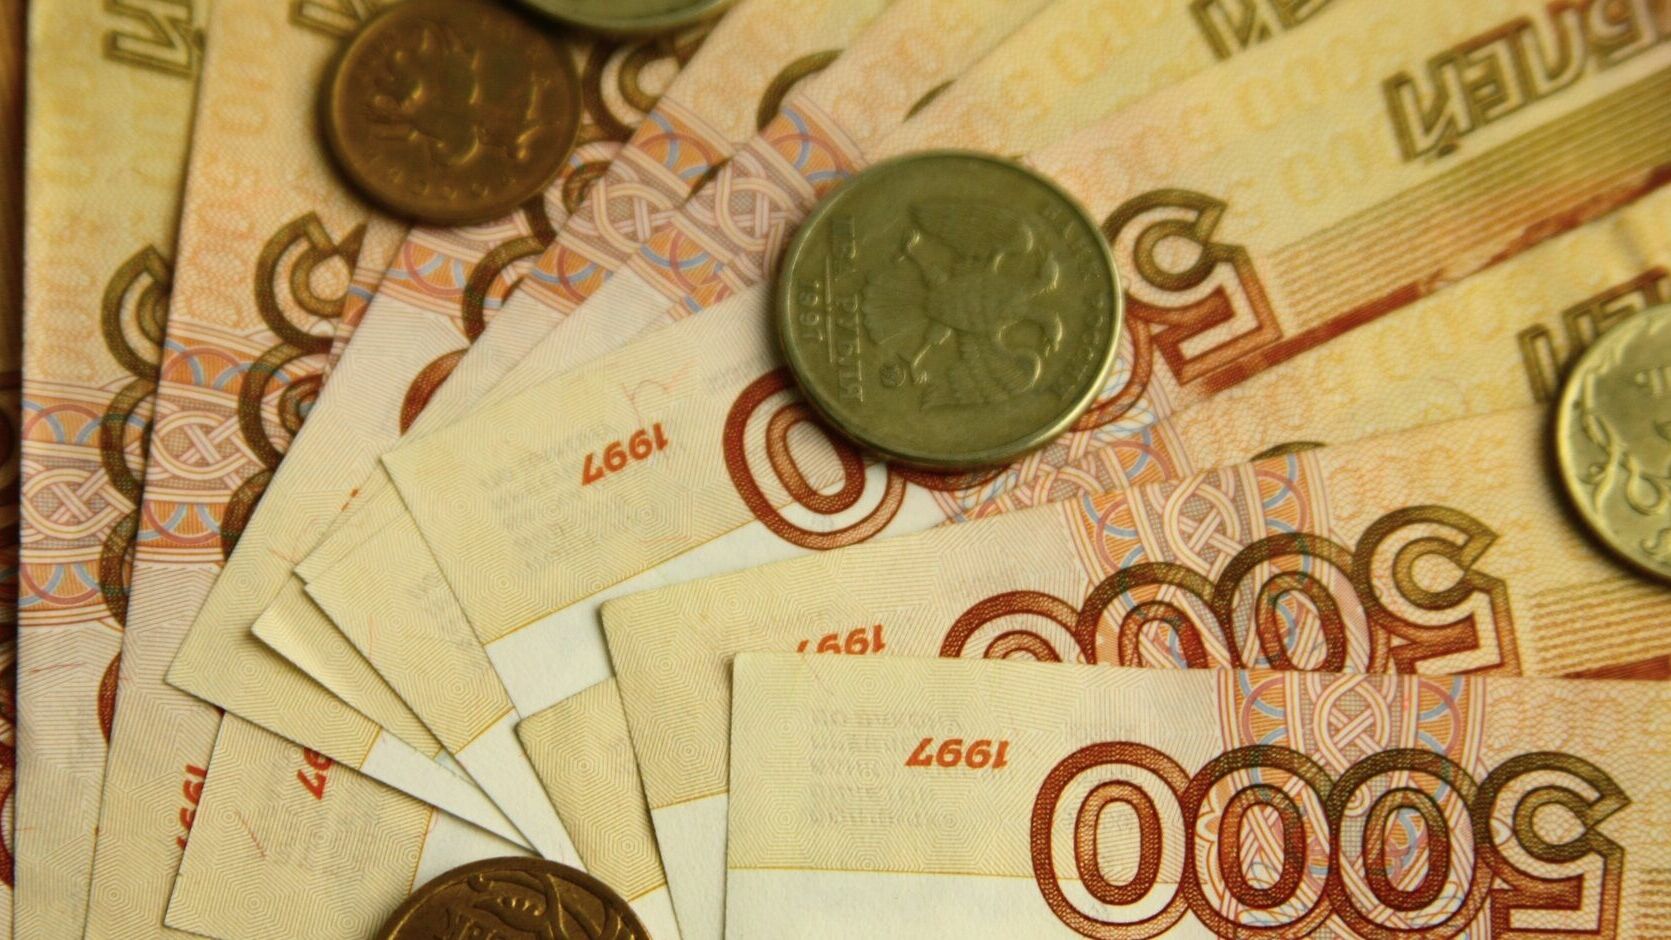 В Соликамске главбух с помощью мужа украла 1,5 млн рублей